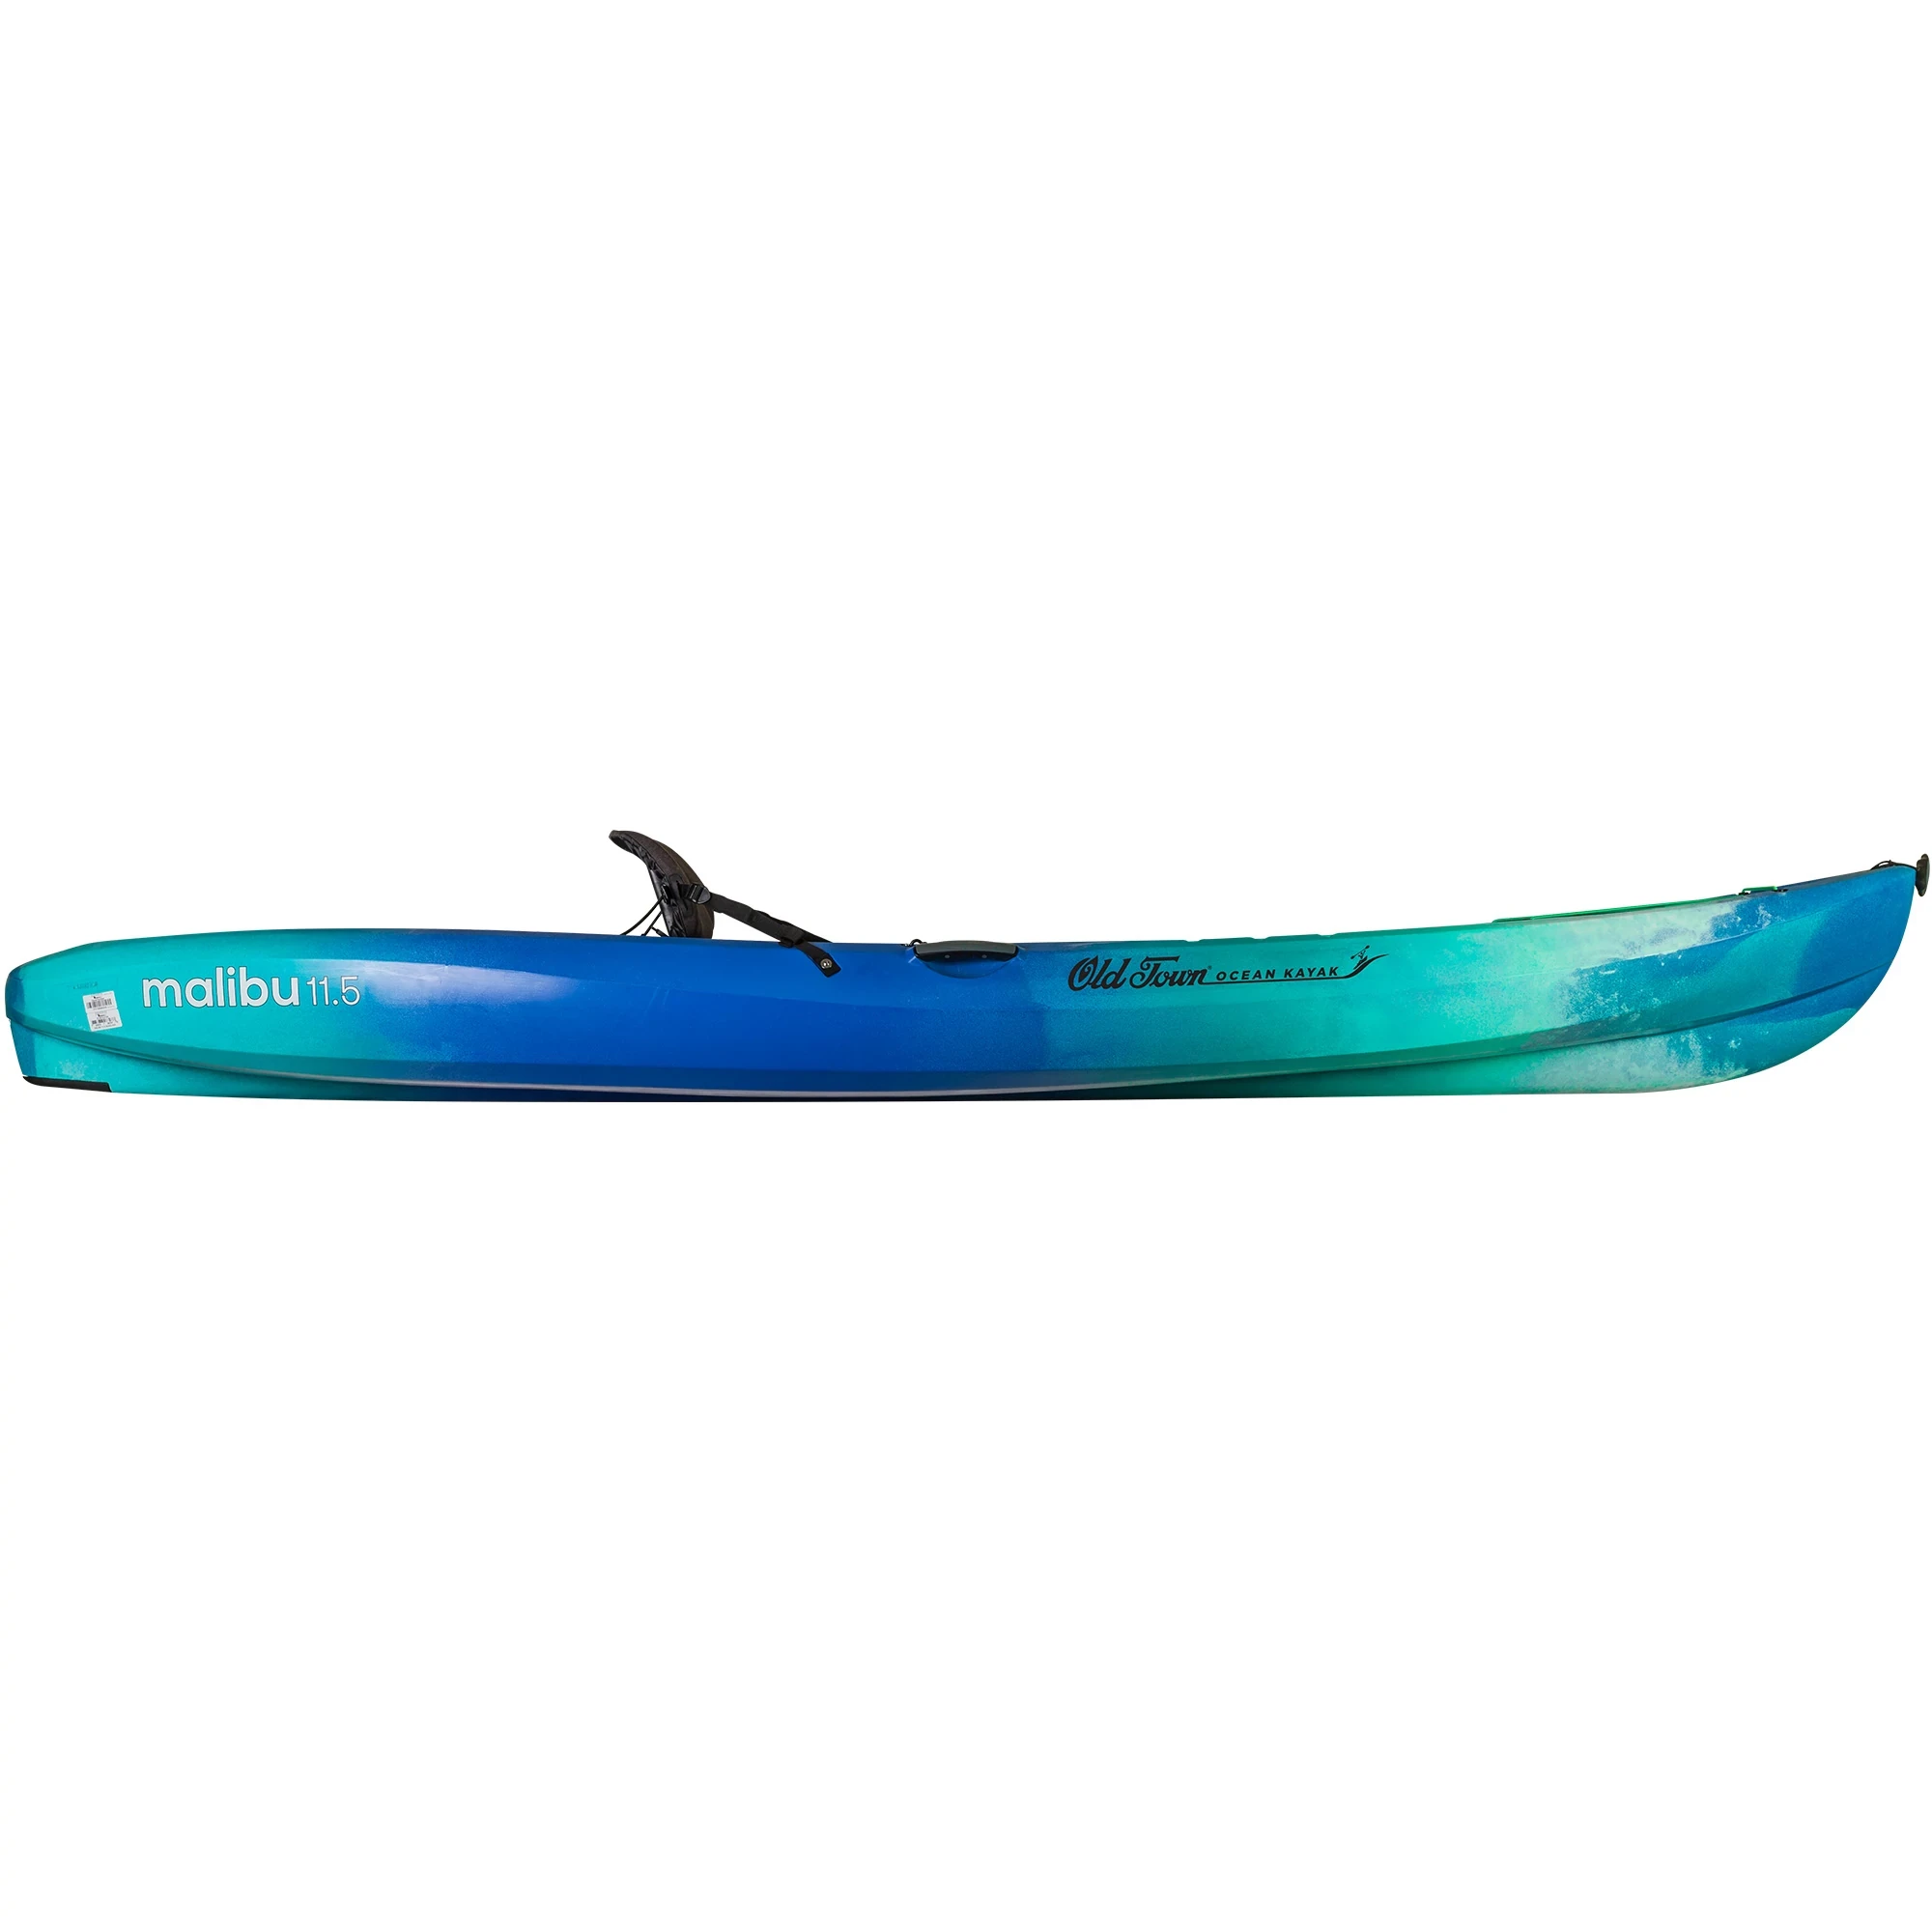 Ocean Kayak Malibu 11.5 - Seaglass - Side View